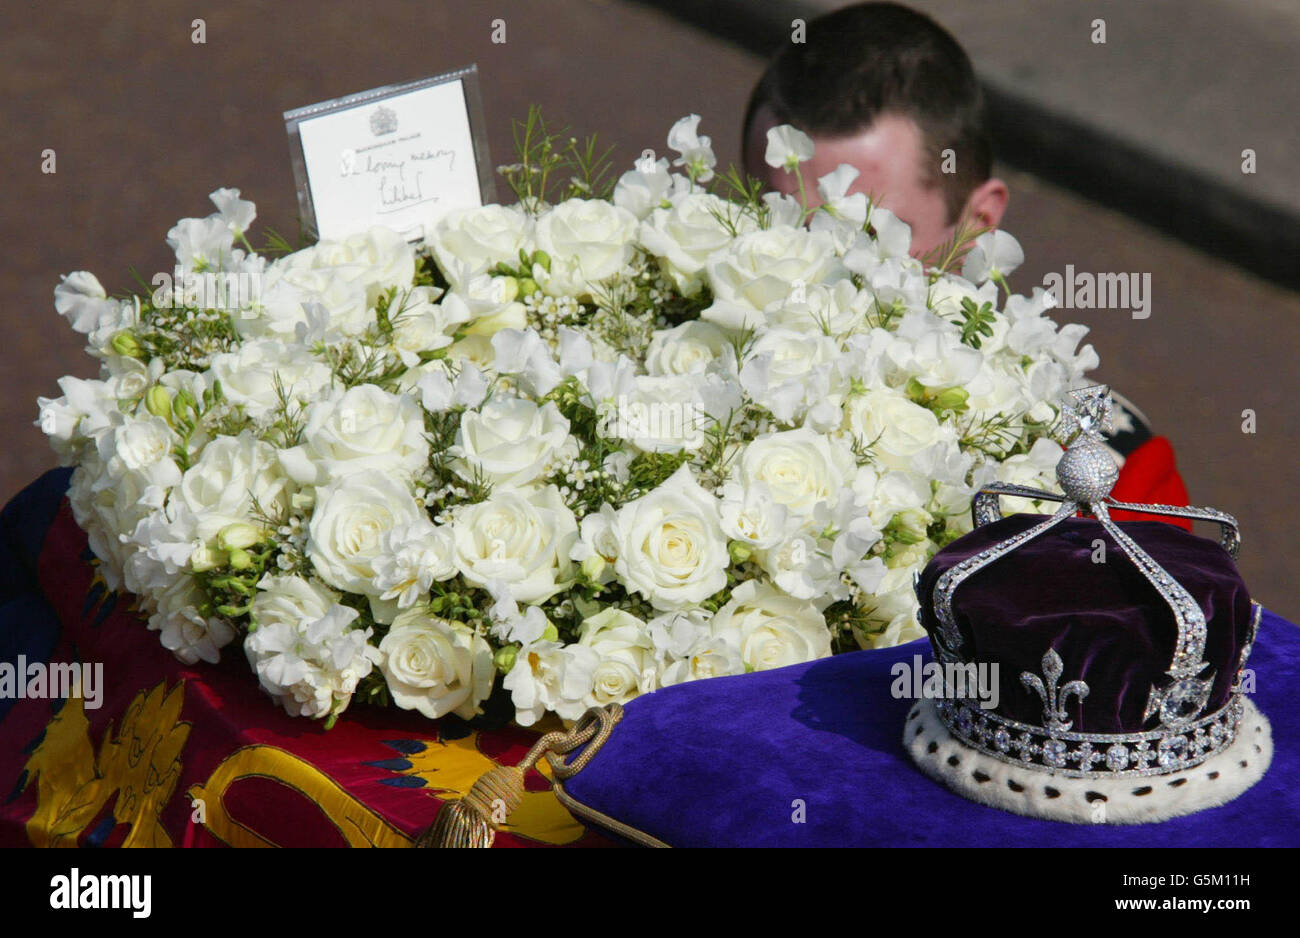 Blumen mit der Botschaft "in loving Memory, Lilibet" von Königin Elizabeth II liegen auf dem Sarg von Königin Elizabeth, der Königin Mutter, wie es auf einem Gewehrwagen zu Beginn der zeremoniellen Prozession zum liegend-in-State in der Westminster Hall platziert. * Tausende von Trauernden säumten den Weg, um der Königin Mutter, die am vergangenen Samstag im Alter von 101 Jahren starb, ihre letzte Ehre zu erweisen. Ihr Begräbnis findet am 9. April statt, danach wird sie in der St. George's Chapel in Windsor neben ihrem verstorbenen Ehemann König George VI. Beigesetzt Stockfoto